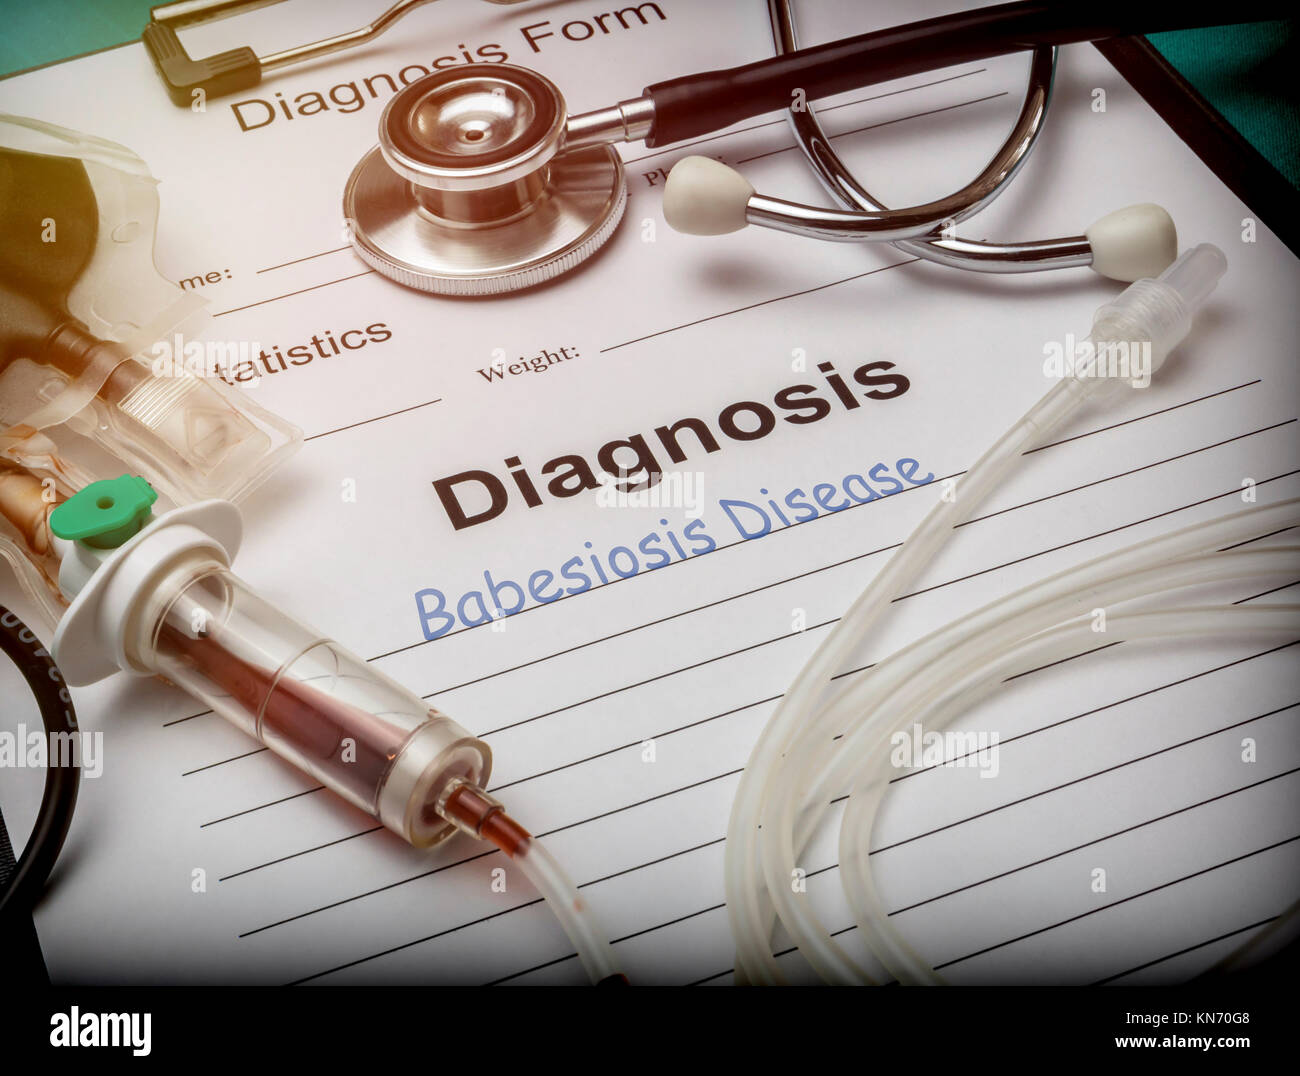 Diagnose Form, babesiose Krankheit, tropfbewässerung Ausrüstung mit Spuren von Blut in einem Krankenhaus, konzeptionelle Bild Stockfoto